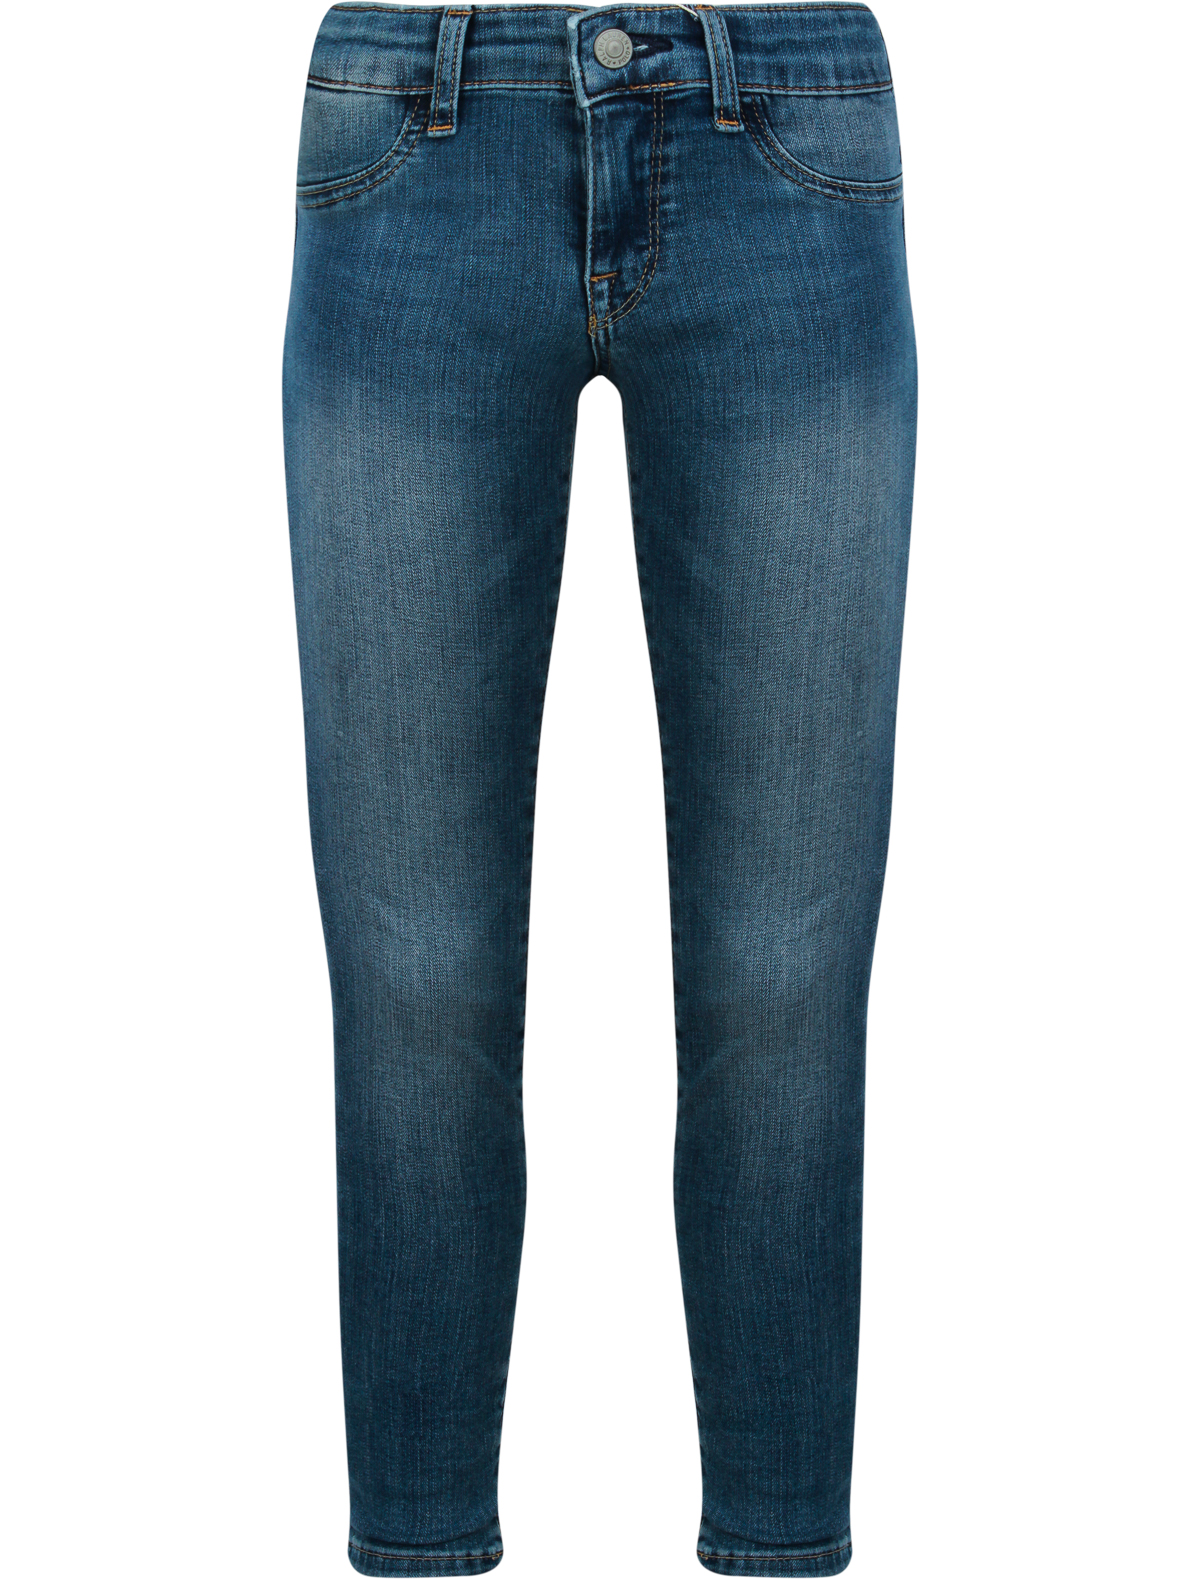 джинсы ralph lauren для девочки, синие